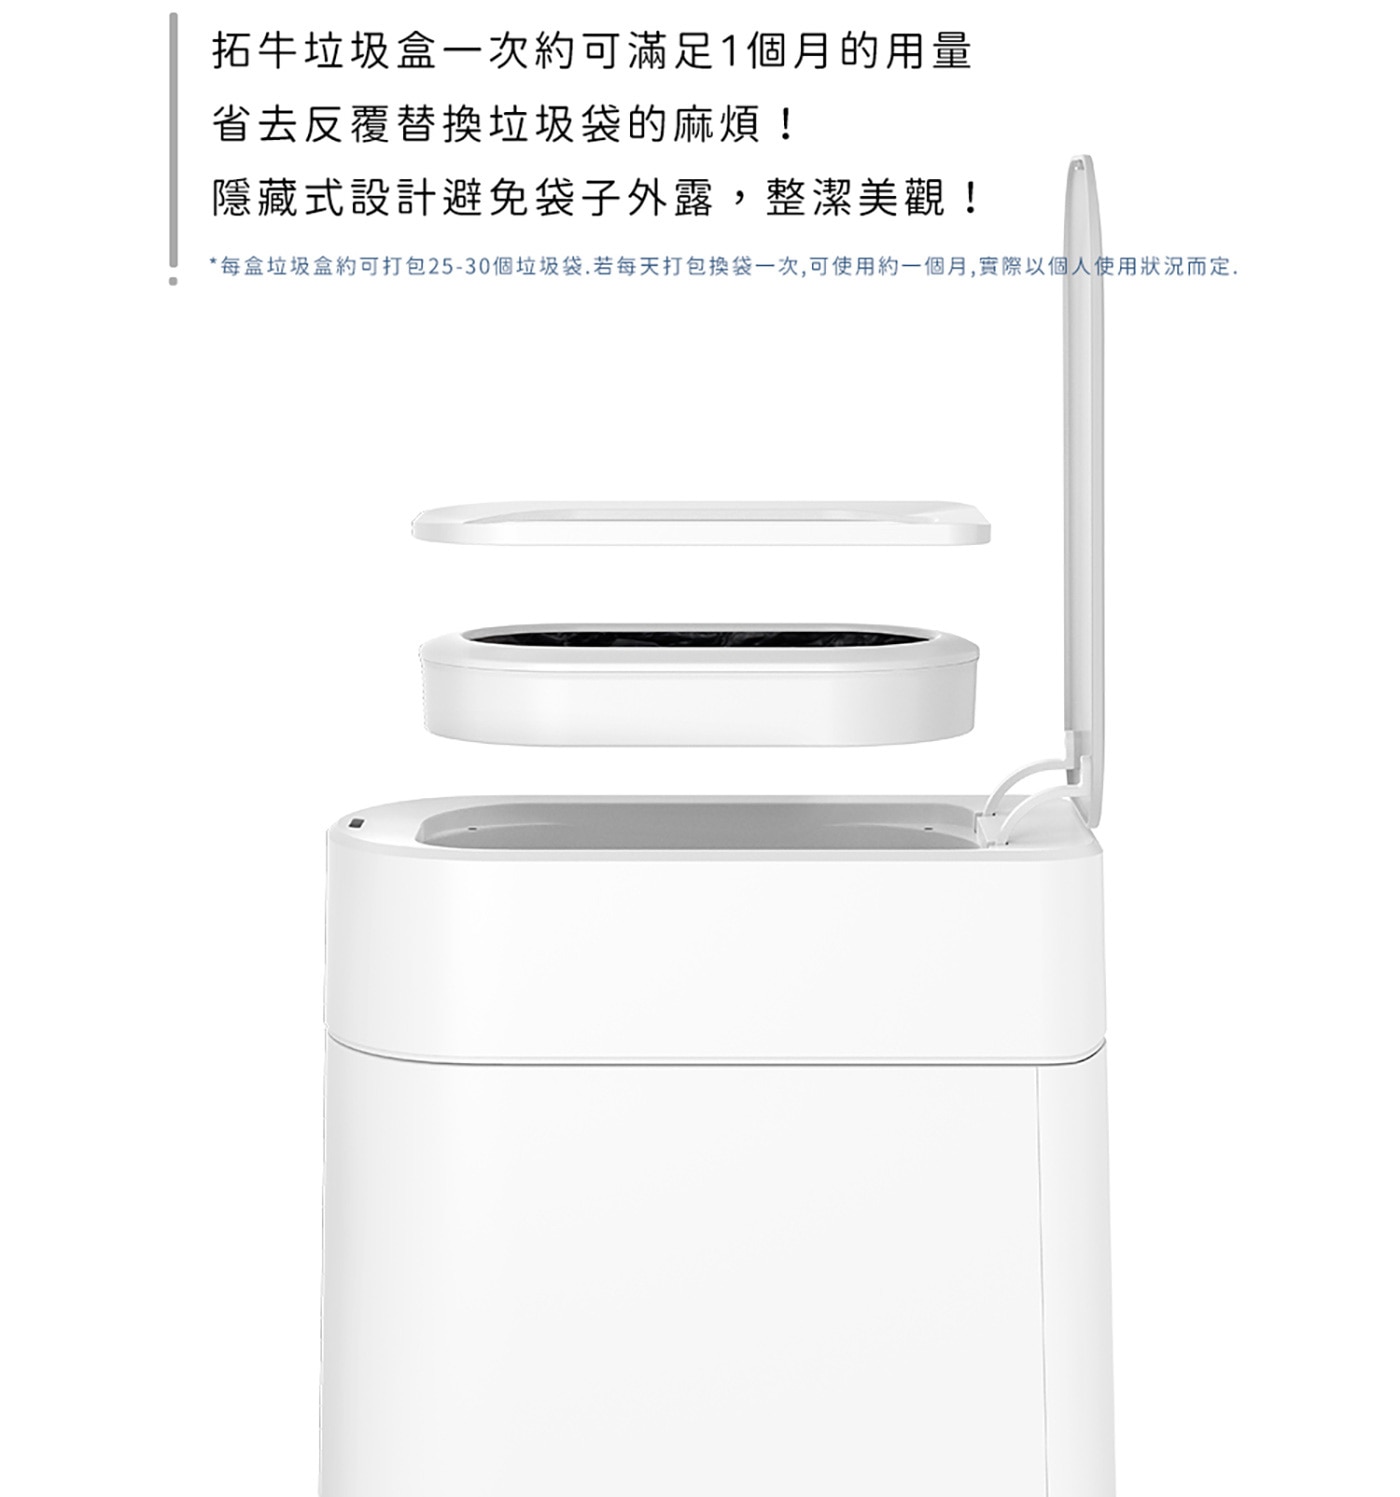 拓牛 R03F 台灣版白色半透明垃圾袋 6入 (T3 專用) 一鍵自動打包，熱塑封口技術，完整密封，無斷點設計。